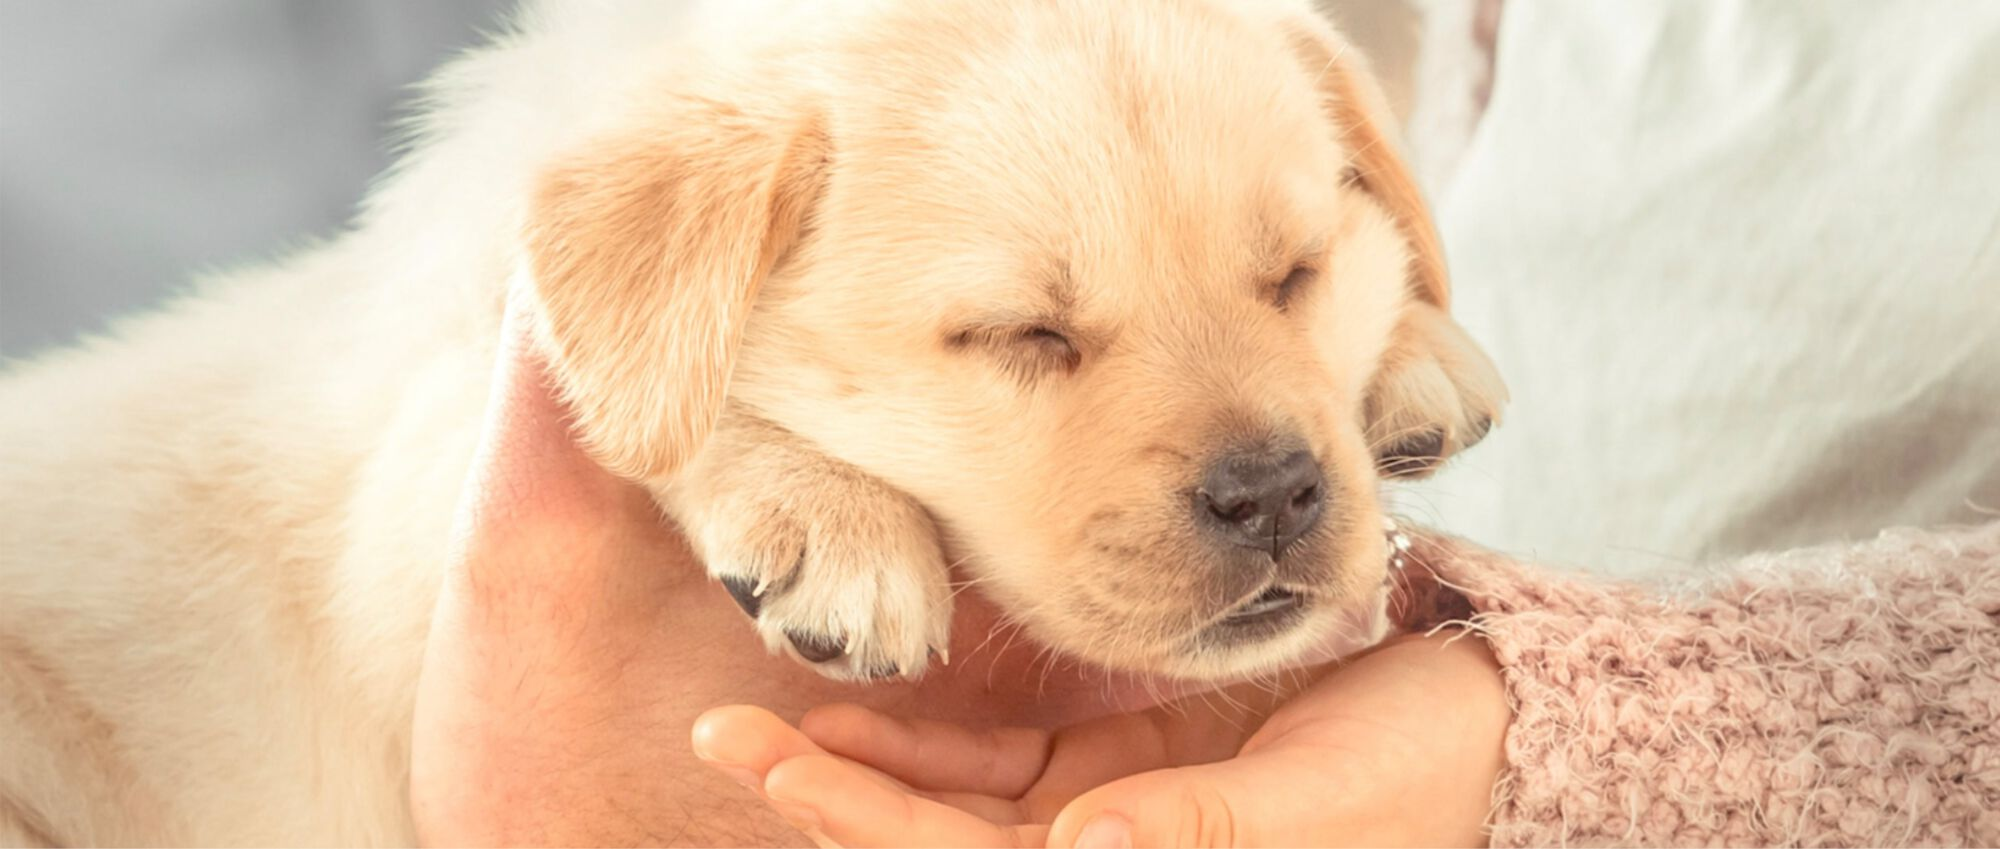 Un chiot Labrador dort dans les mains de son maître